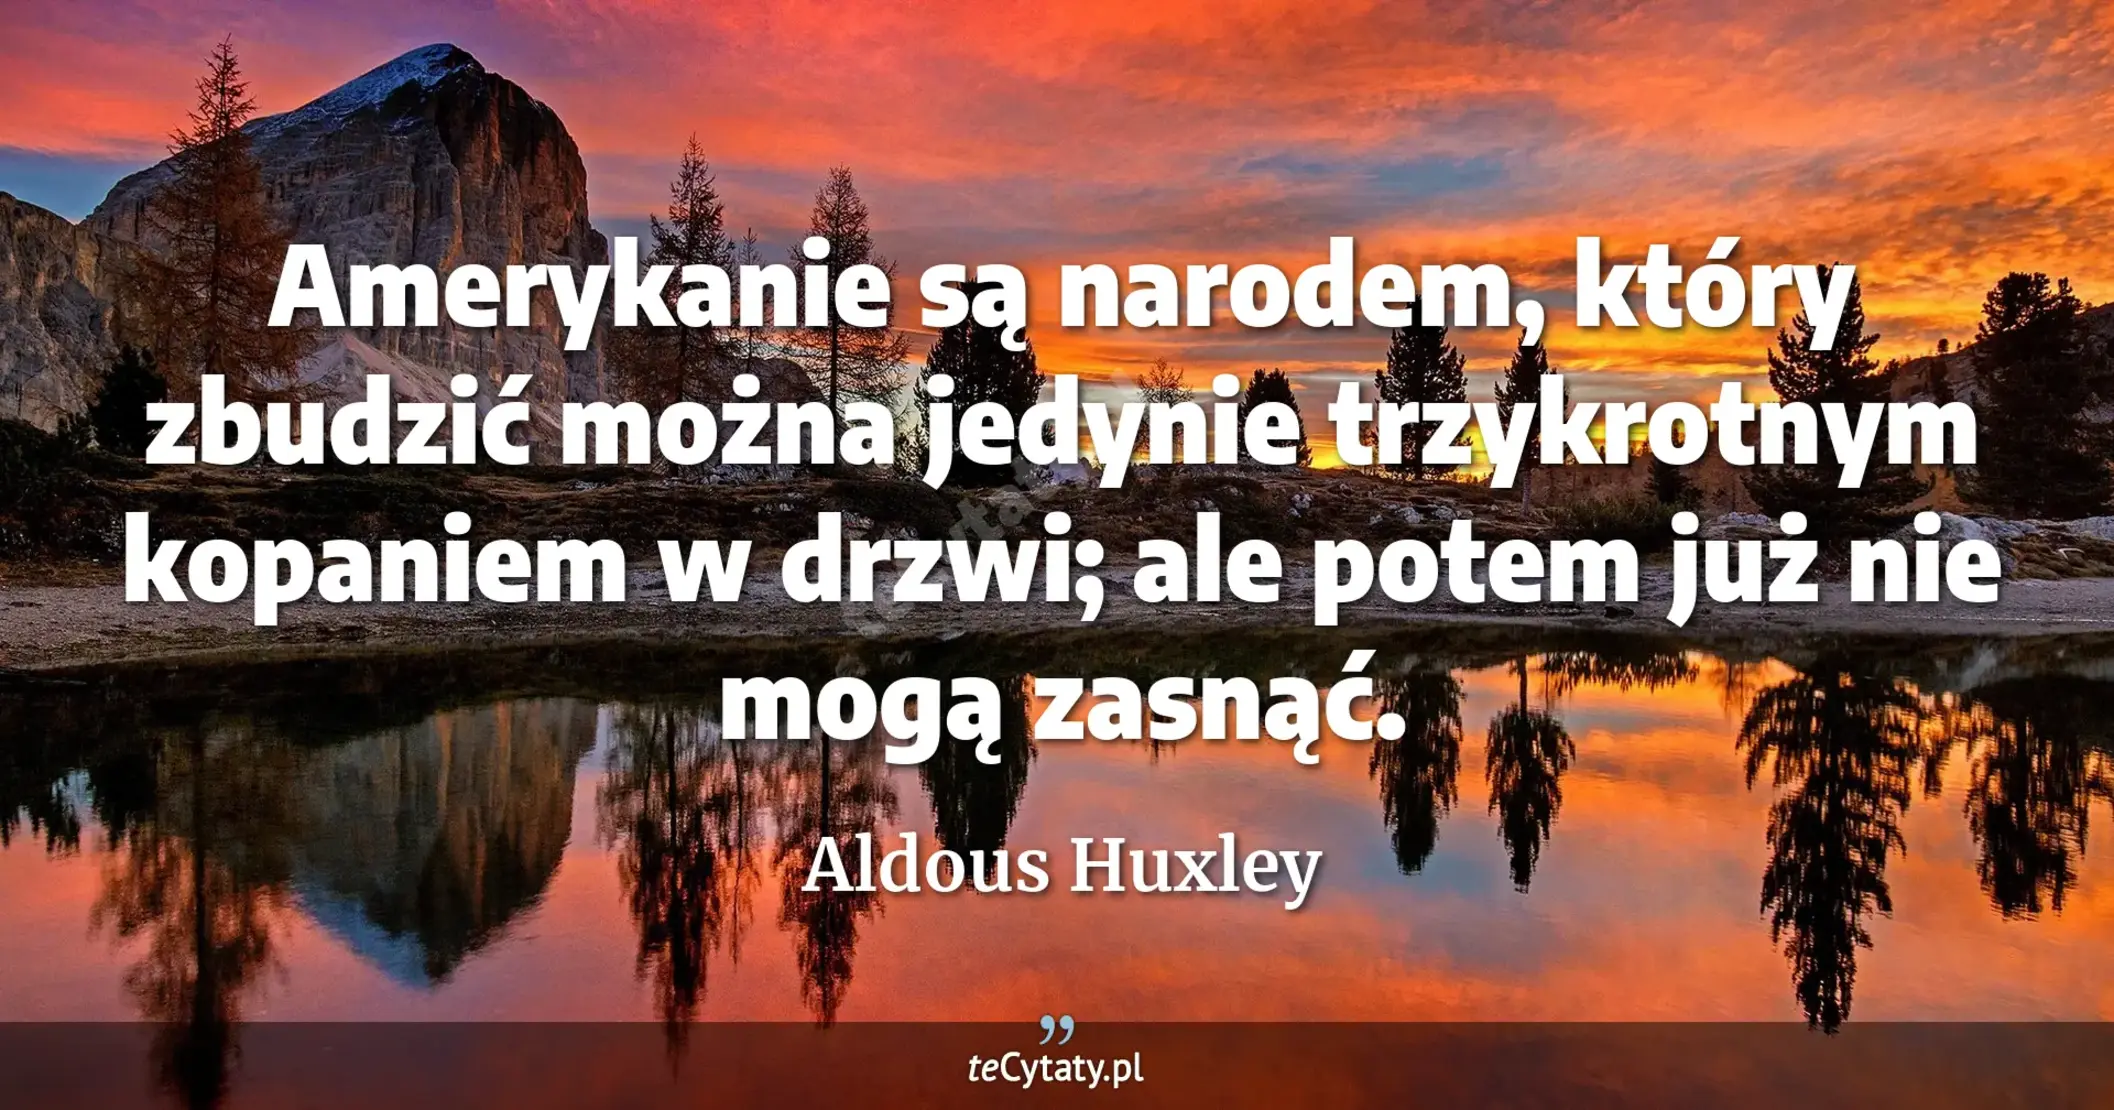 Amerykanie są narodem, który zbudzić można jedynie trzykrotnym kopaniem w drzwi; ale potem już nie mogą zasnąć. - Aldous Huxley